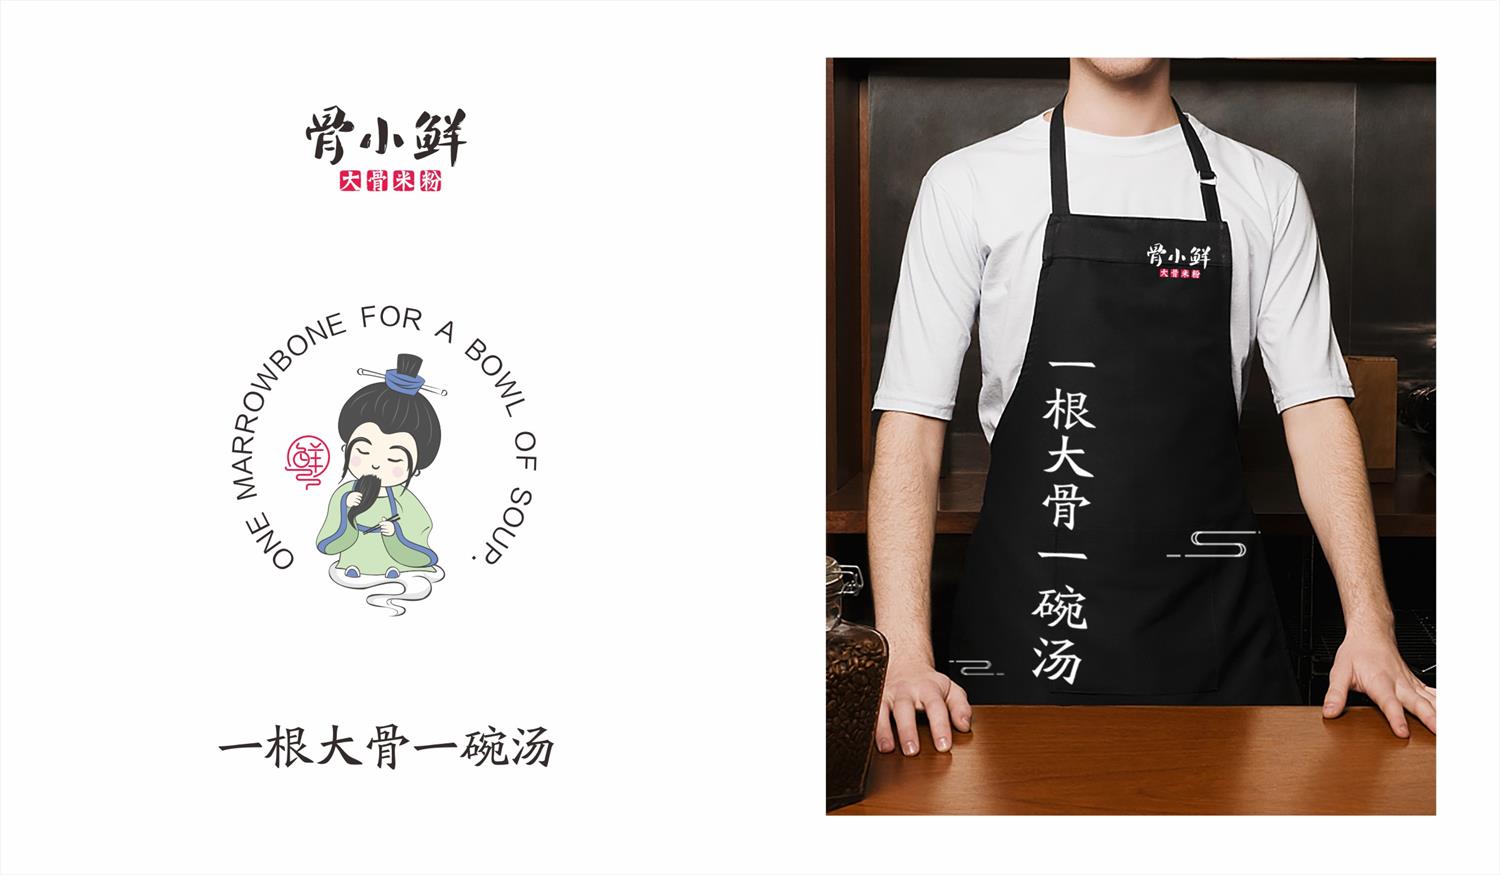 广东米粉连锁餐饮品牌骨小鲜工作服设计